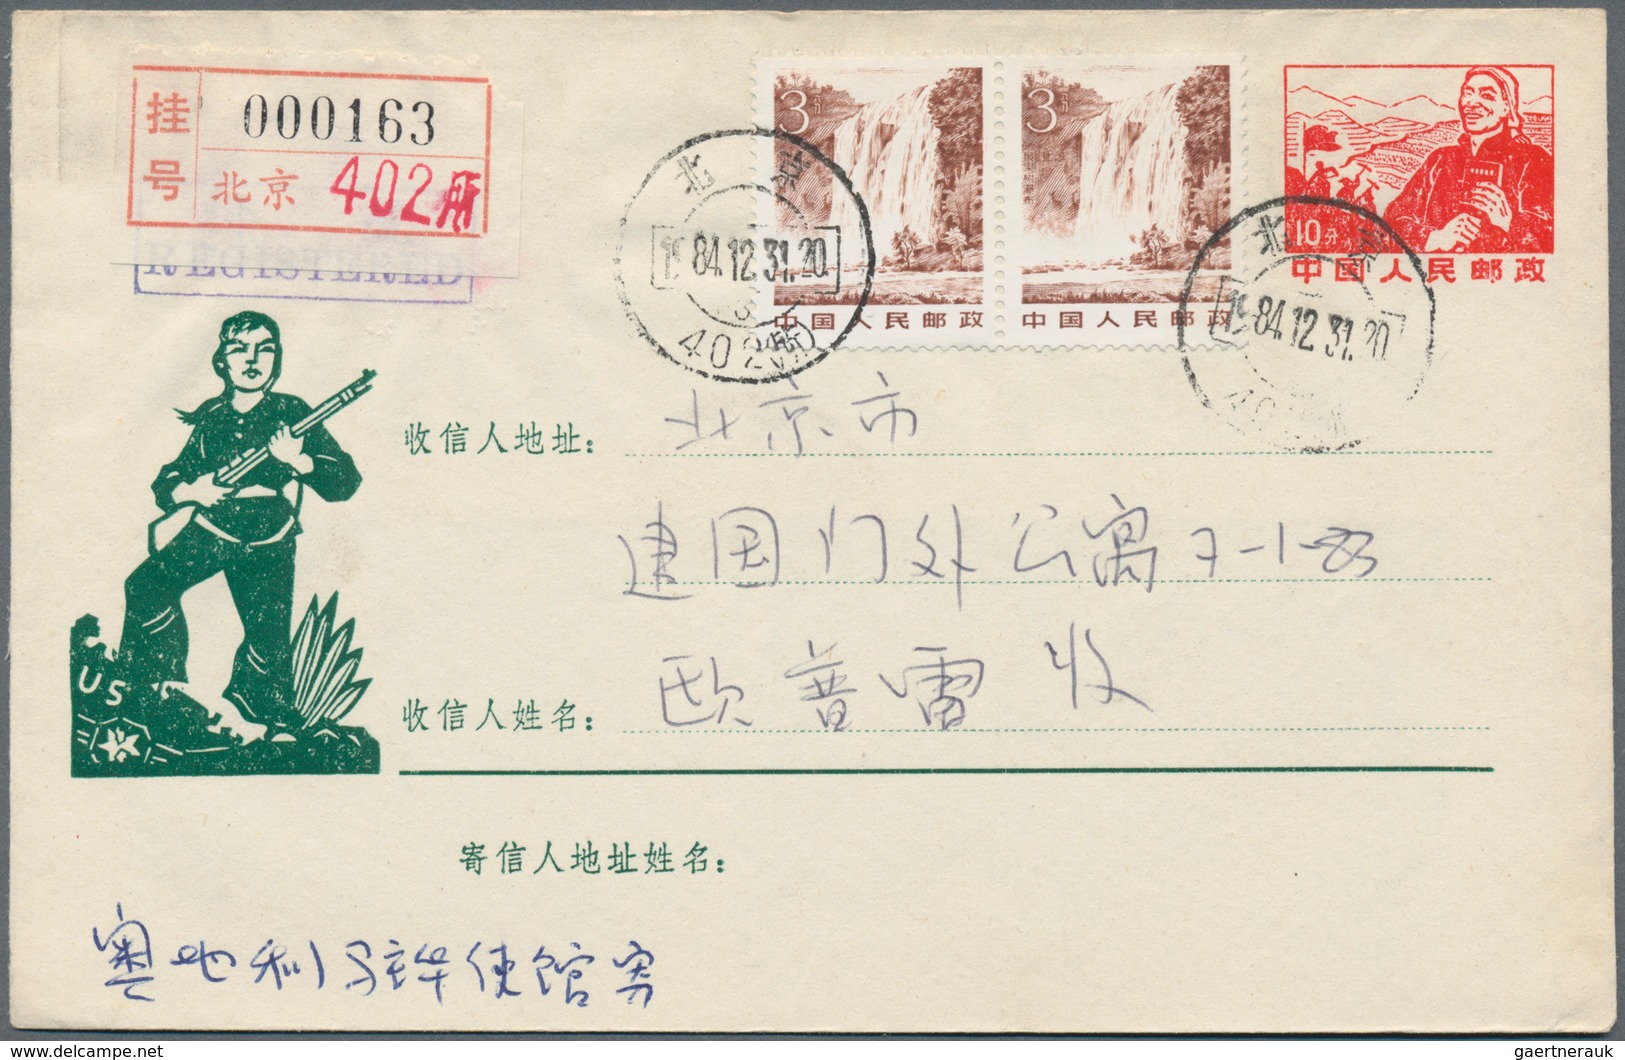 China - Volksrepublik - Ganzsachen: 1967/73, cultural revolution stationery envelopes: with slogans